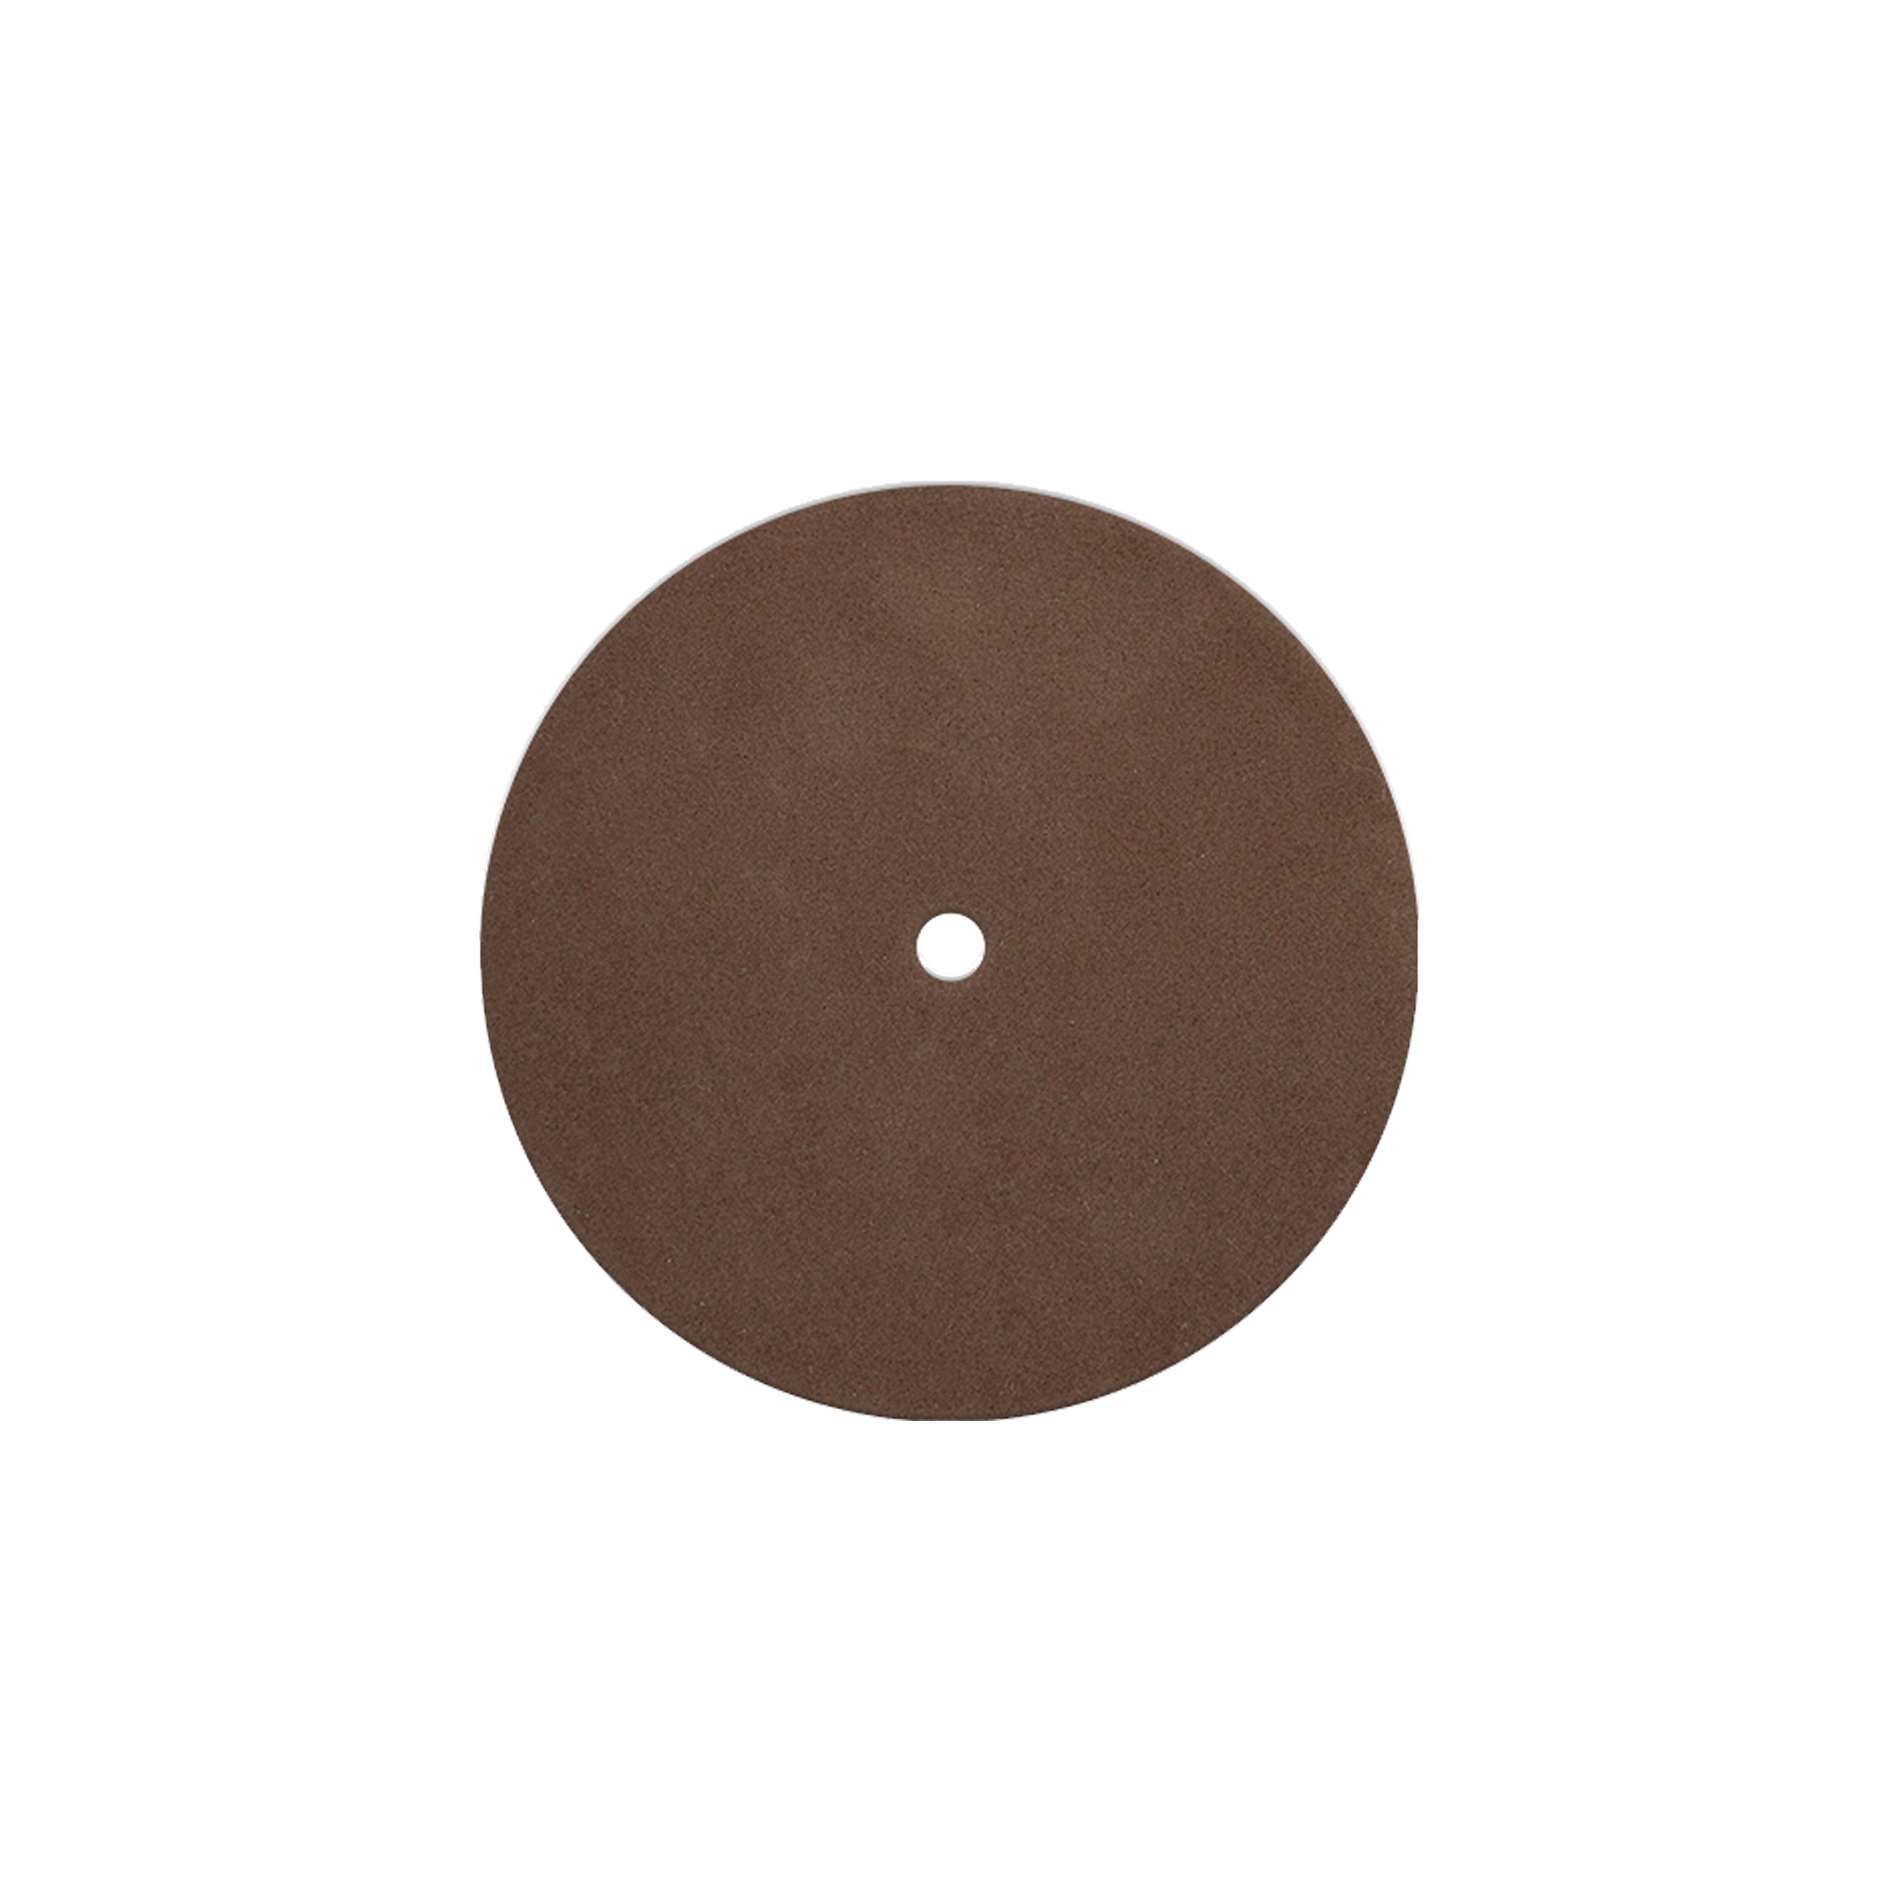 Enova Hifi Pack Nettoyage Platine Vinyle - Pnpv20 - Kit De Nettoyage Dj - Variation 2